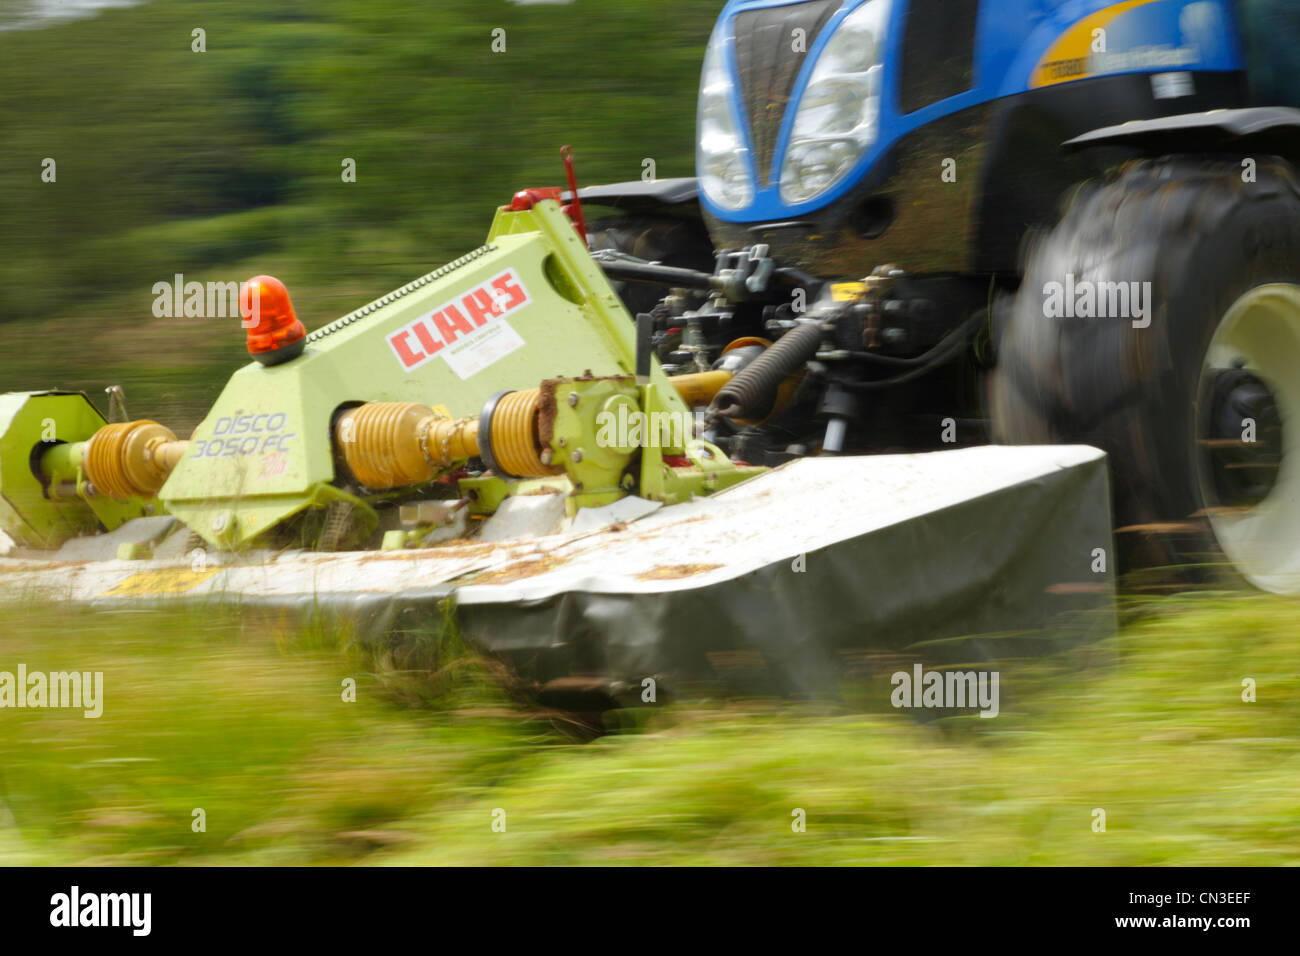 Tractor mower immagini e fotografie stock ad alta risoluzione - Alamy